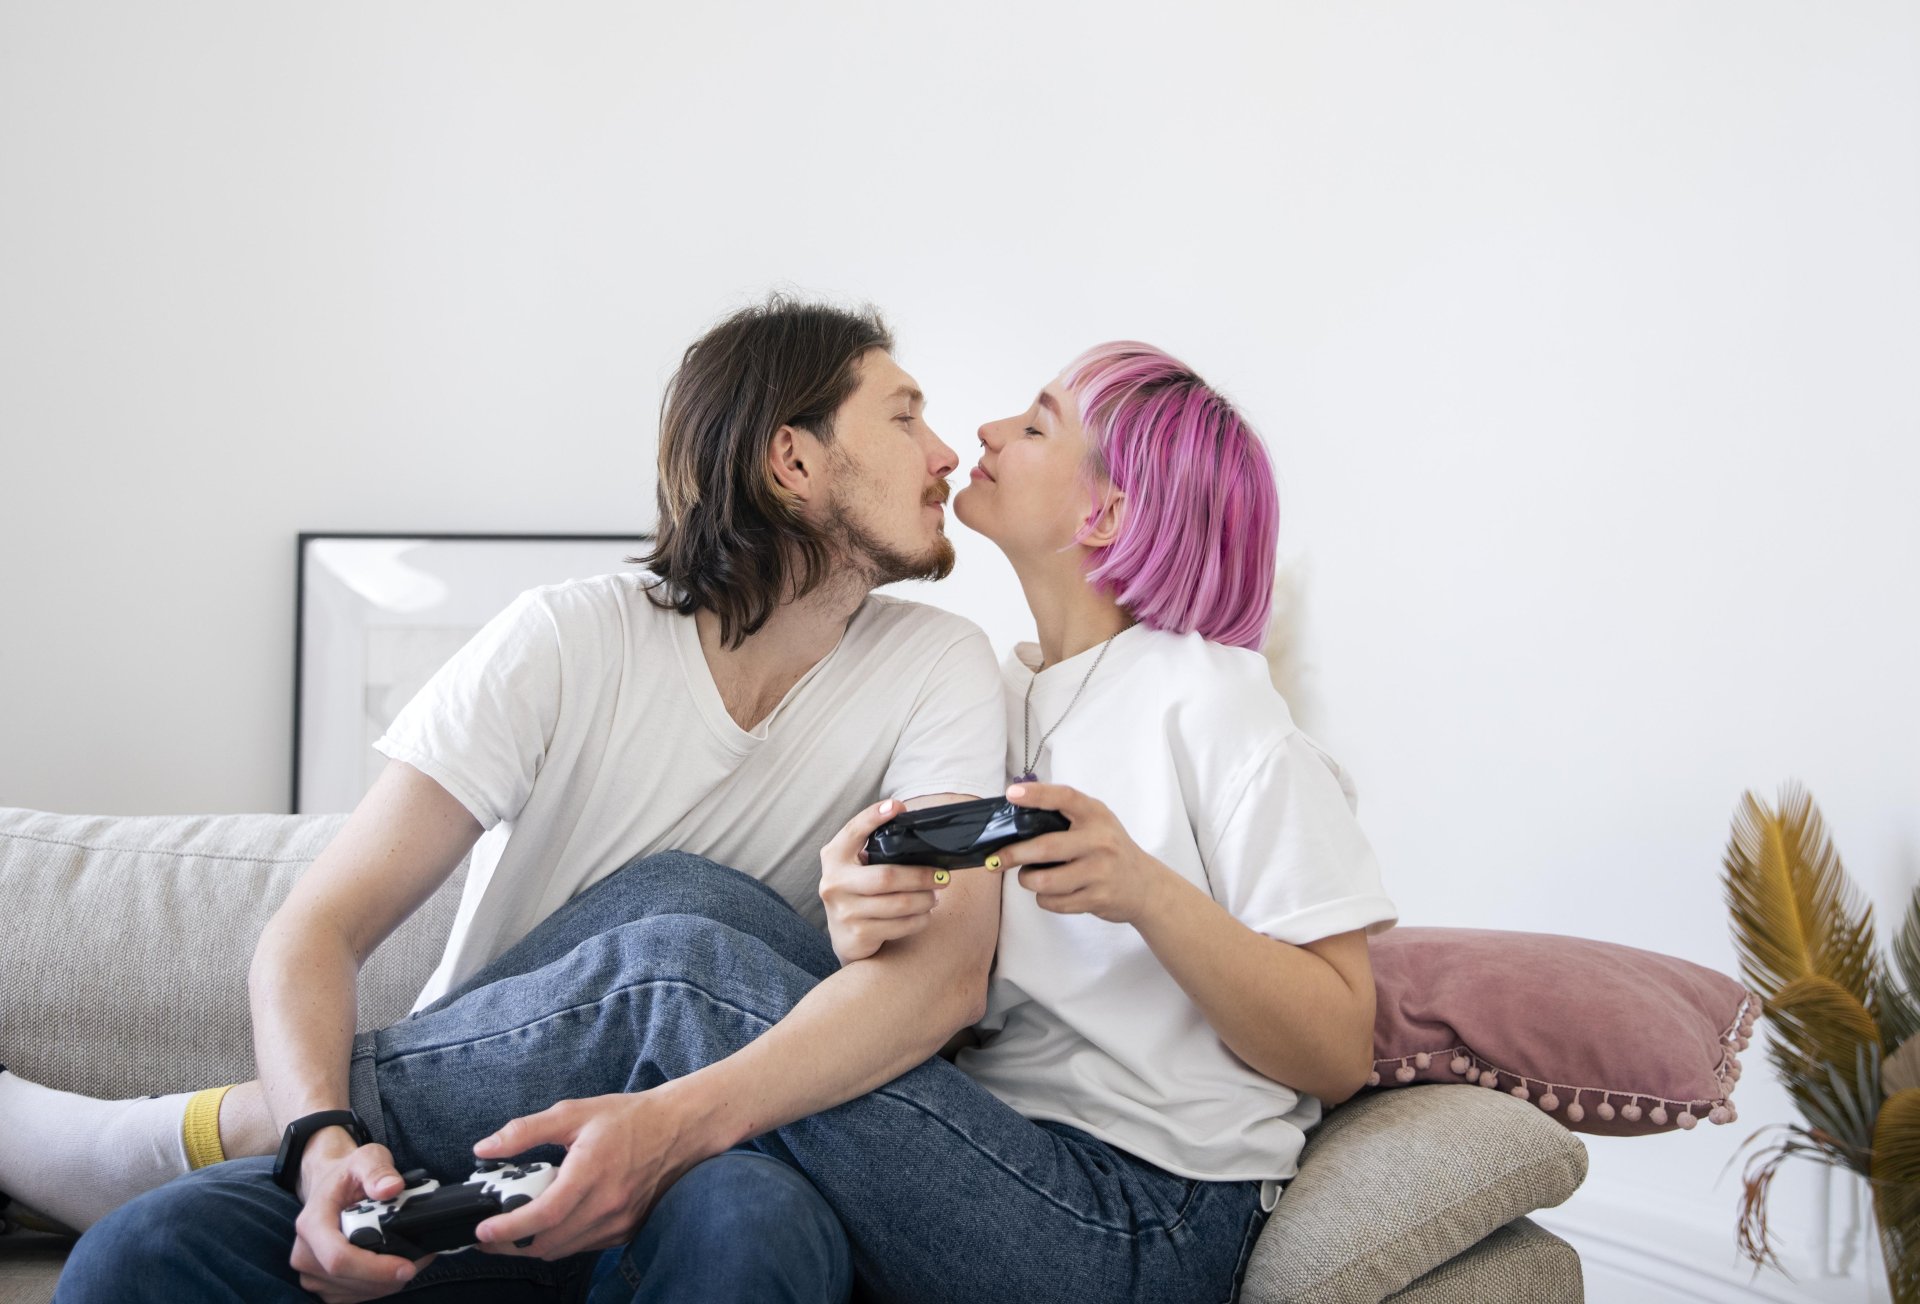 5 ข้อง่าย ๆ ใครมีแฟนเป็นเกมเมอร์ต้องลอง ถ้าเขาเล่นเกมไม่ยอมสนคุณ